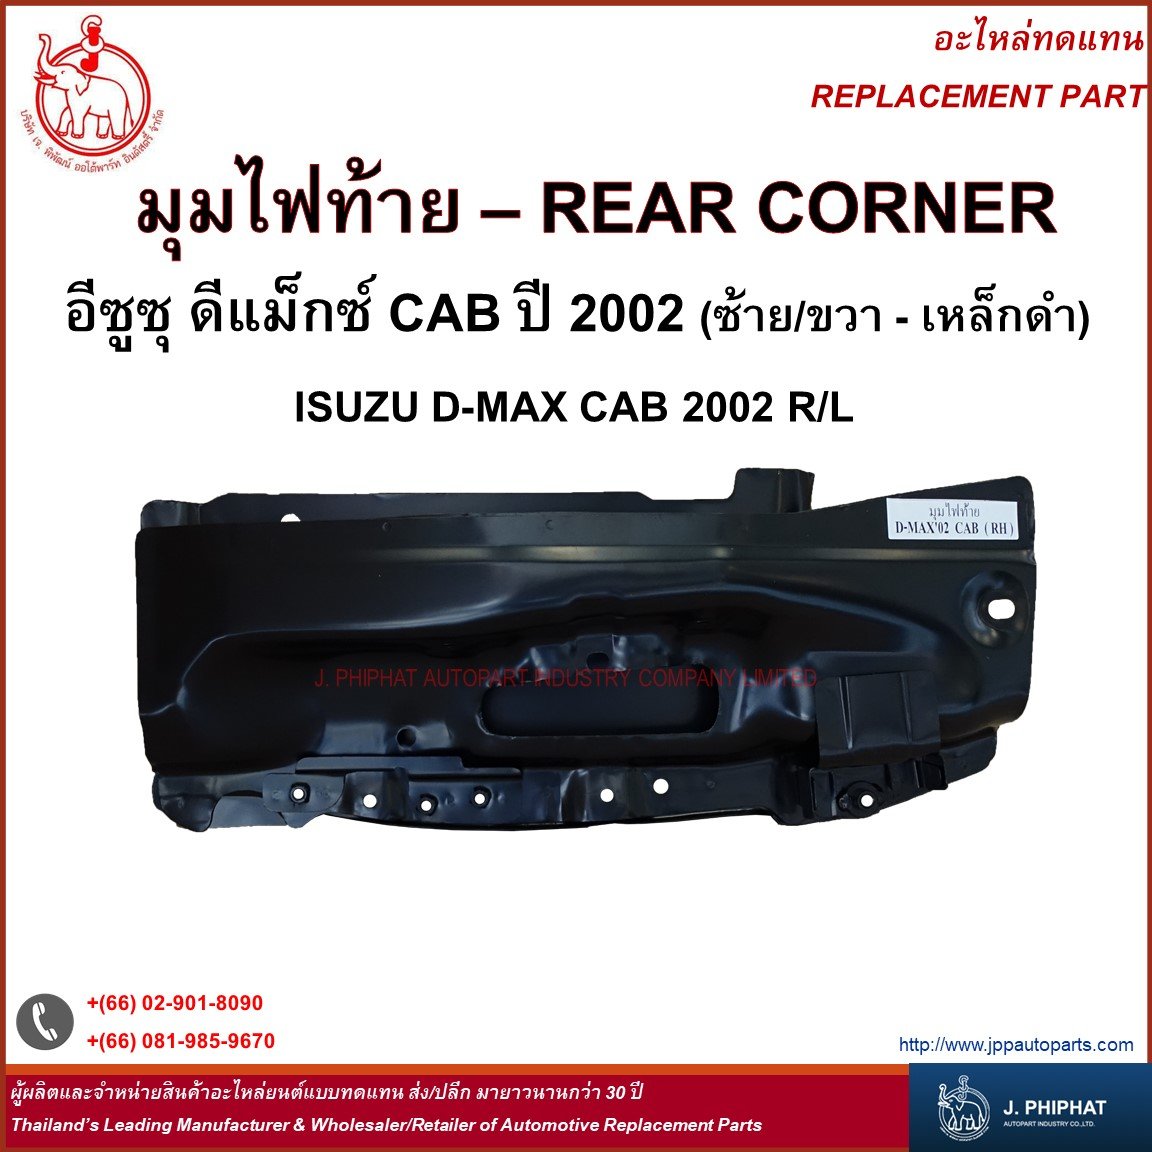 Rear Corner - Isuzu D-Max CAB 2002 R/L